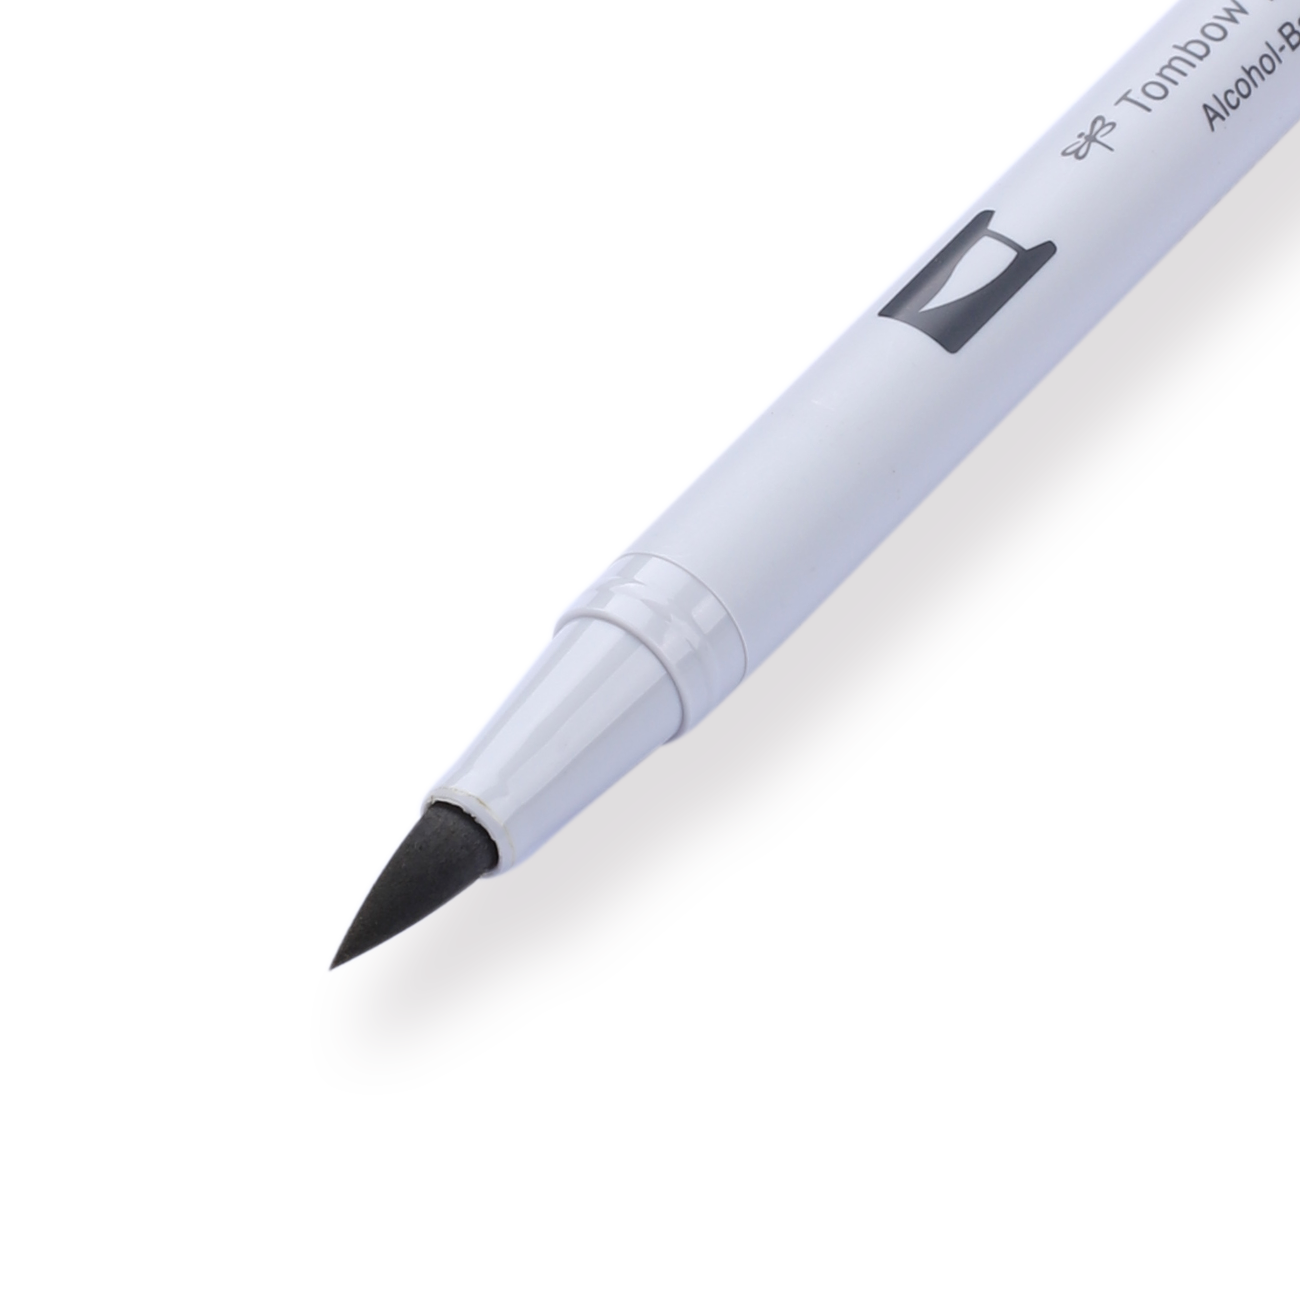 Alcohole Based Marker Sets Brush Tip Alcohol Pigment Marker Pen